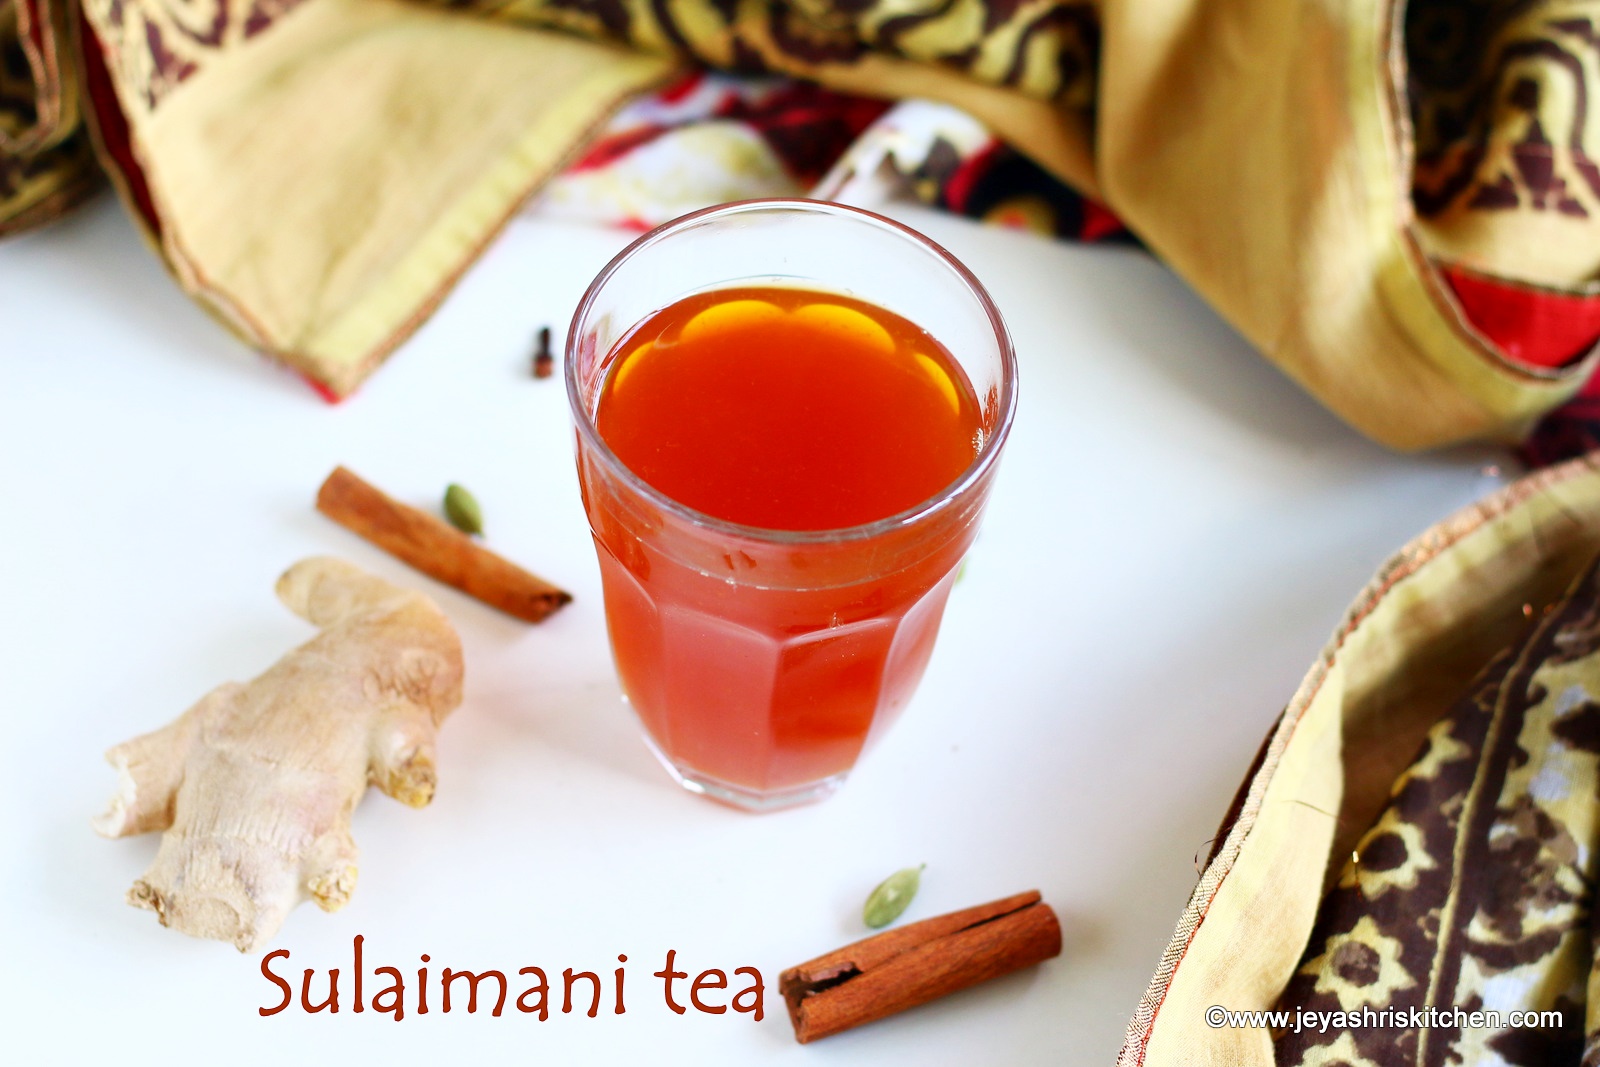 Sulaimani tea